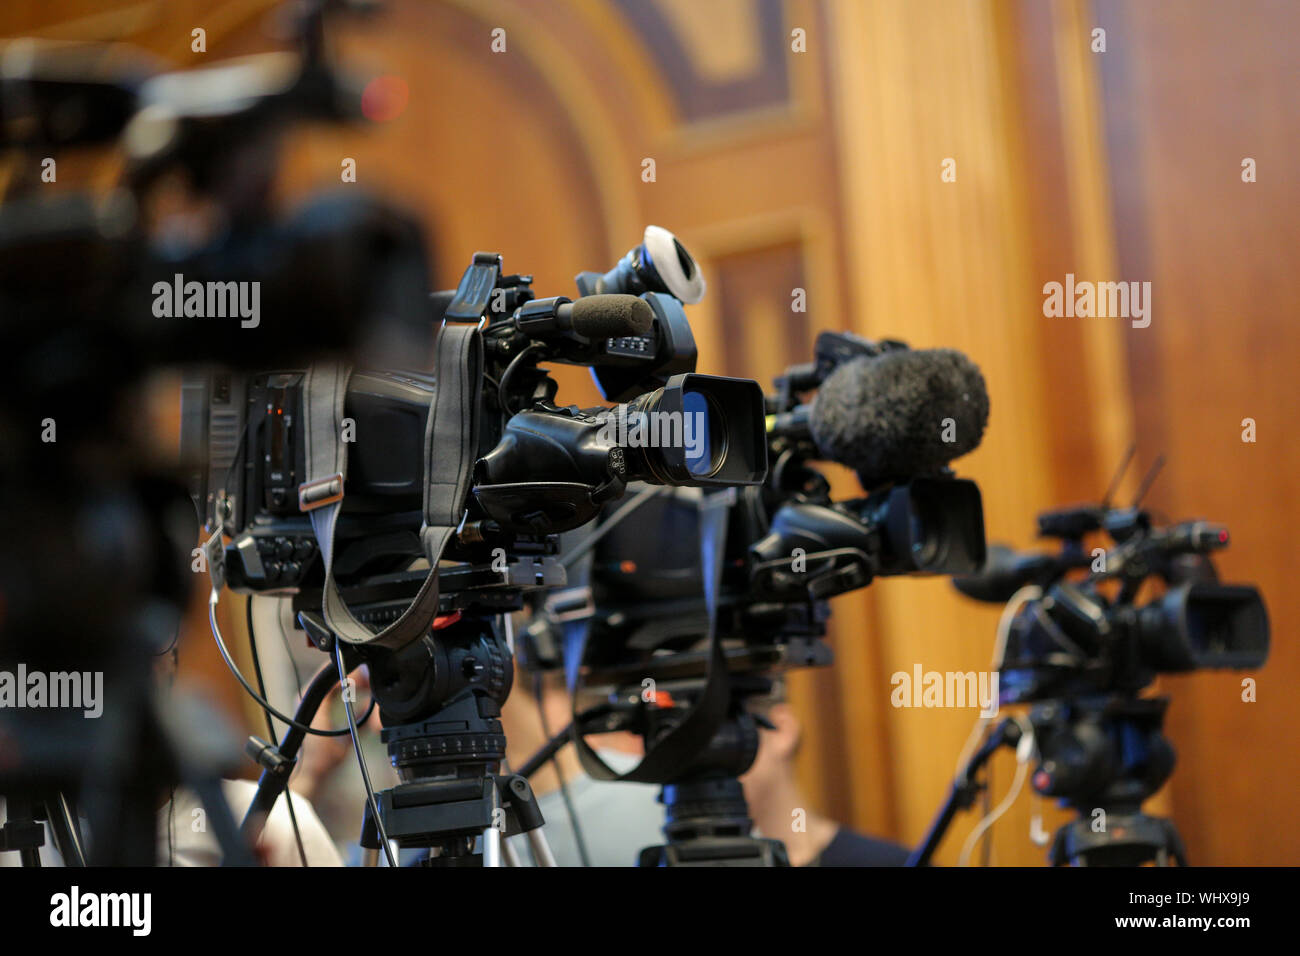 Dettagli della televisione con telecamere e apparecchiature di registrazione durante un evento stampa Foto Stock